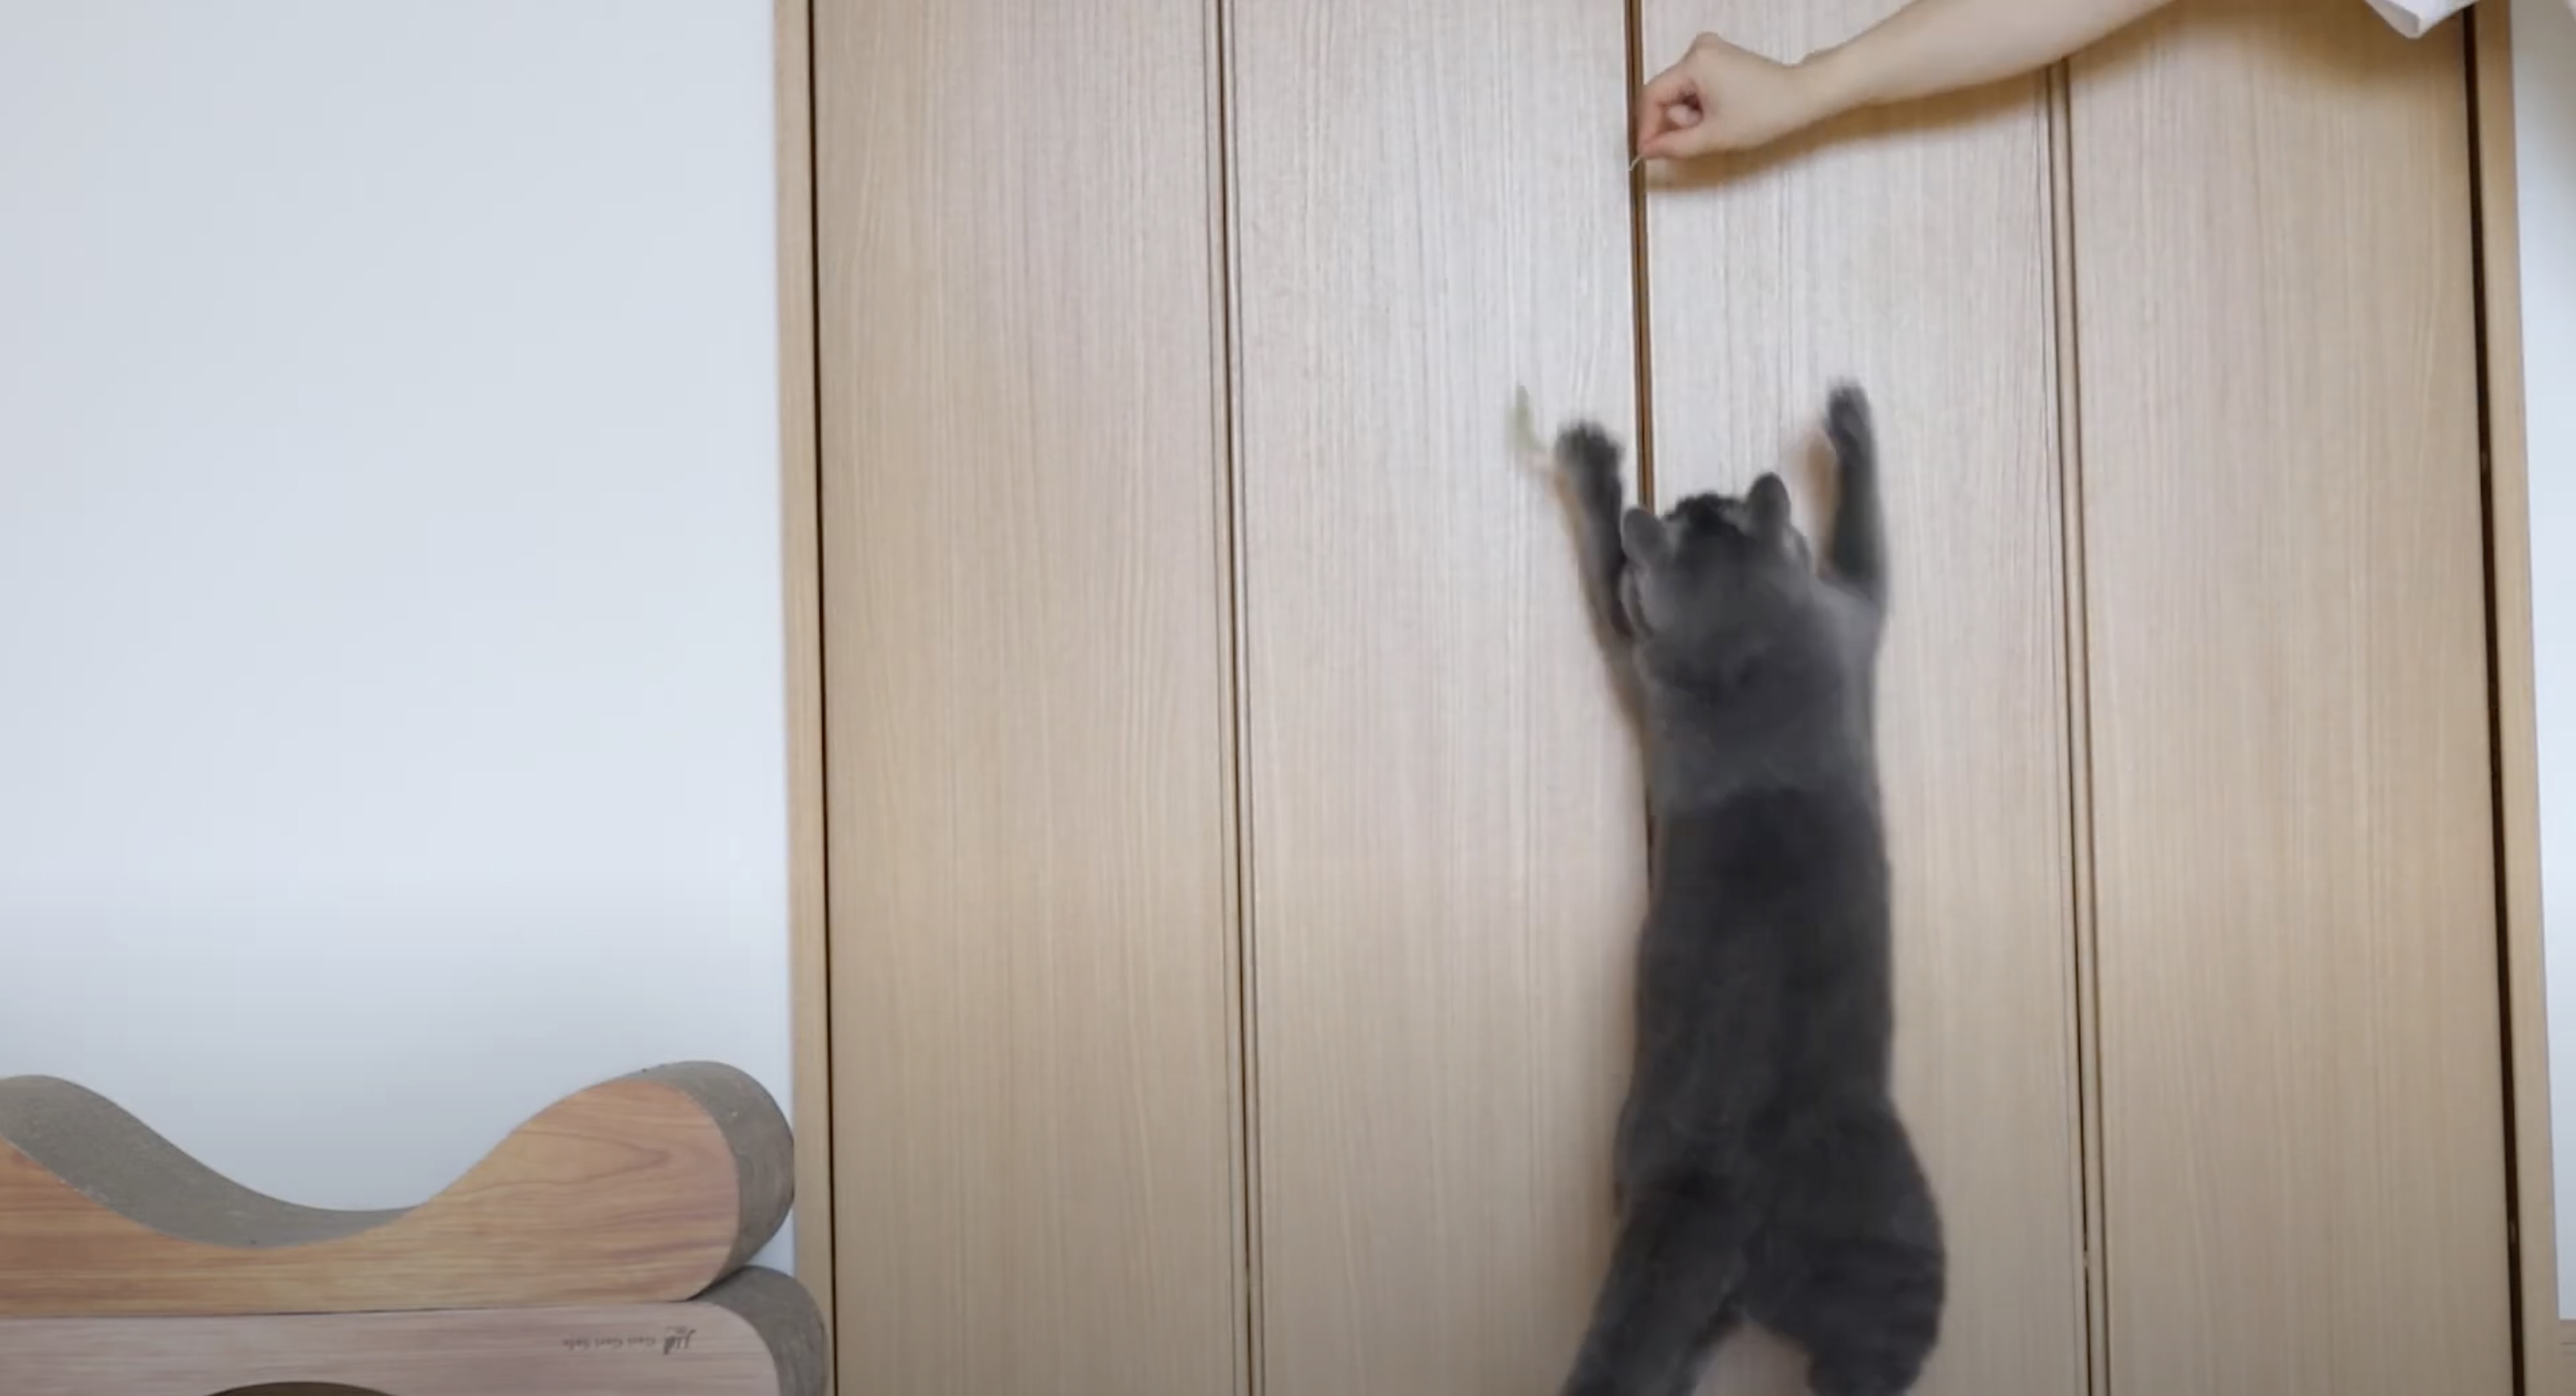 天然の猫のじゃらしに大興奮、バンザイジャンプで壁打ち鳴らす